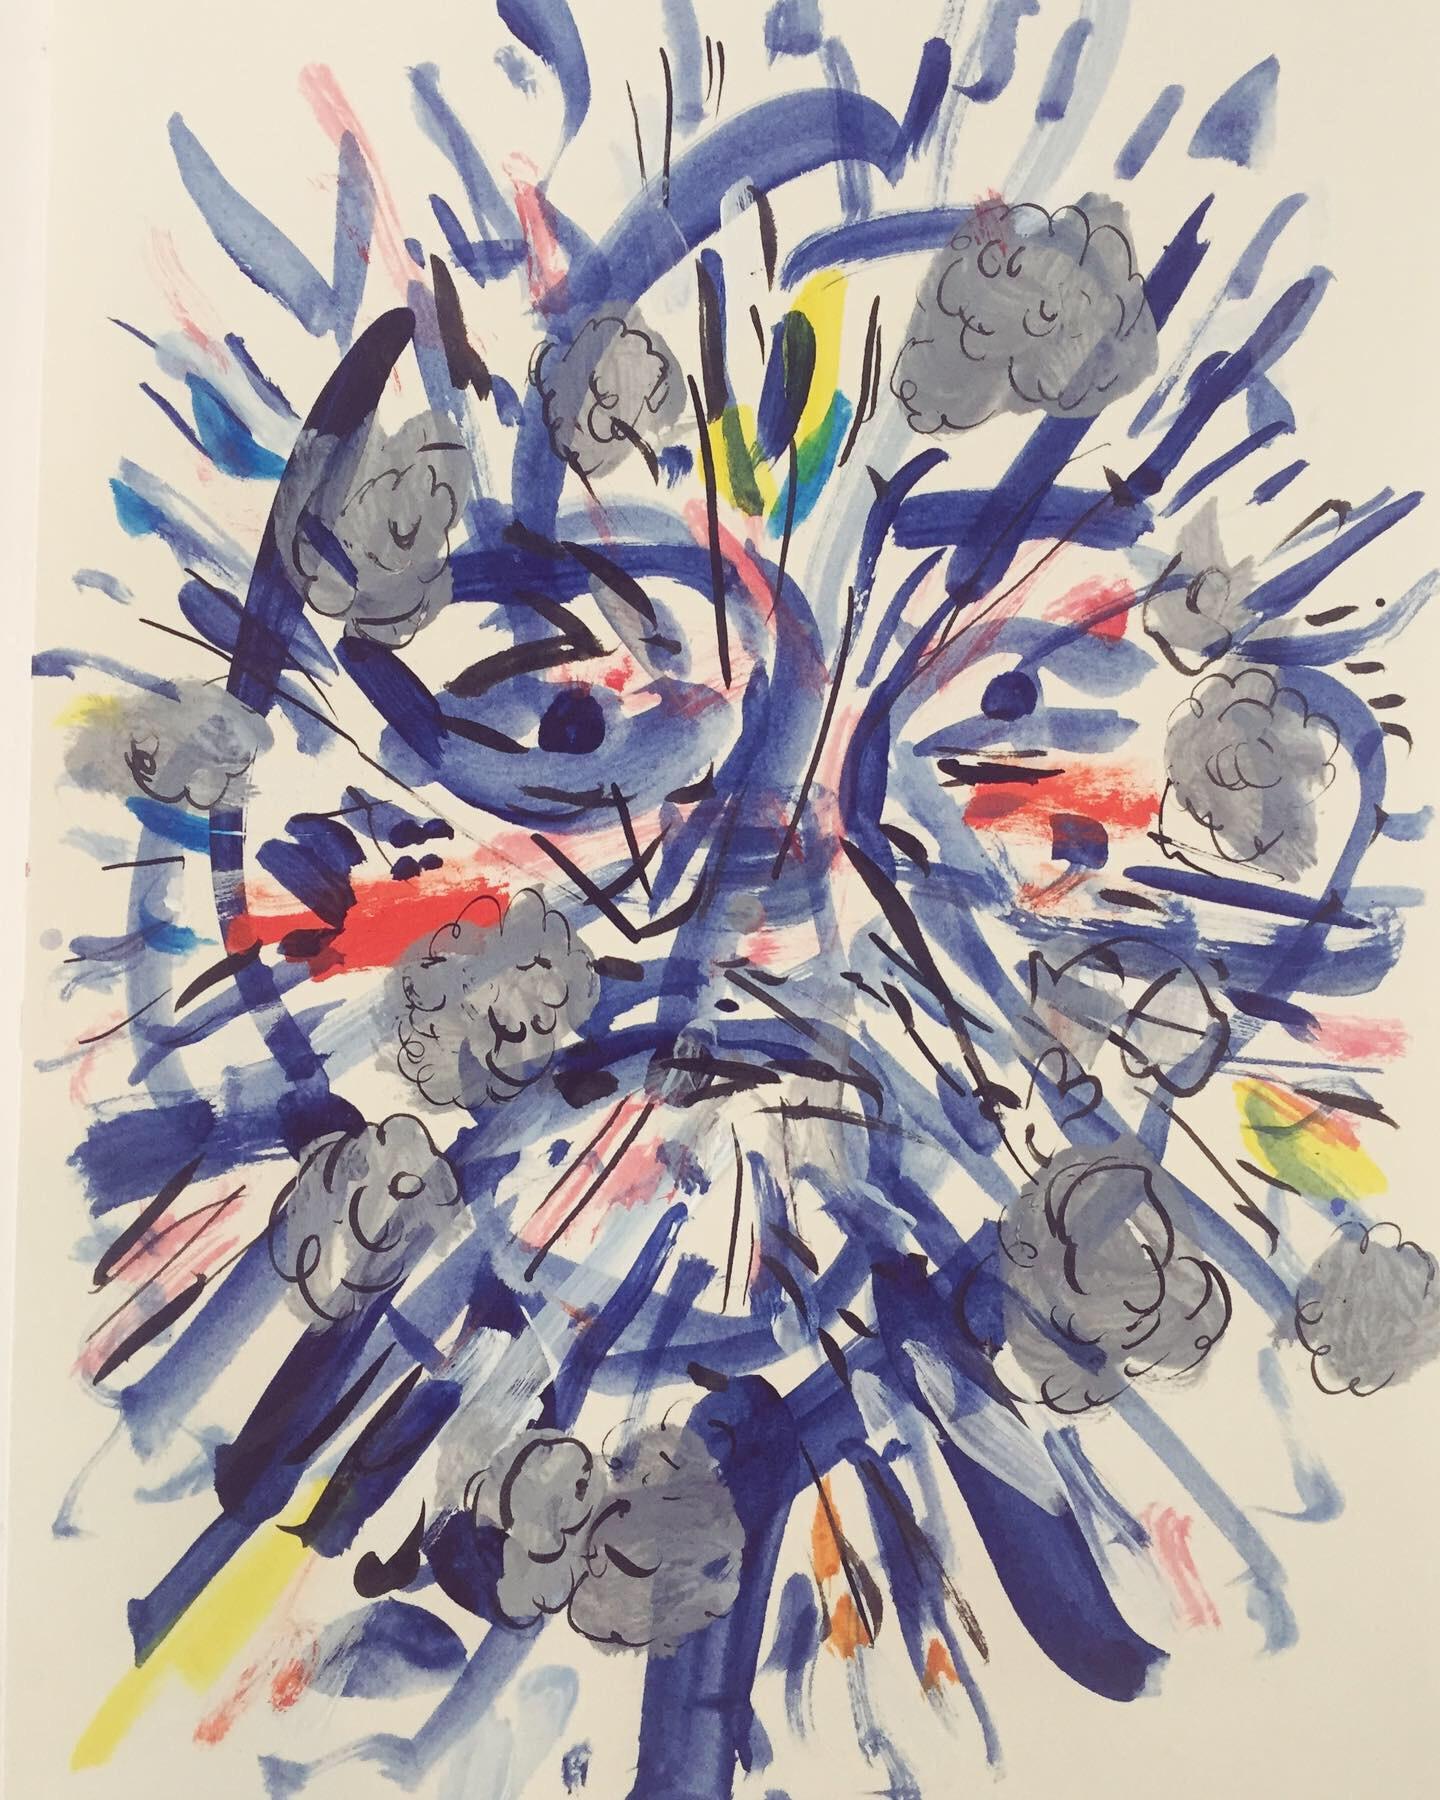 Suite von vier Arbeiten auf Papier „Exploding Faces“ – Art von Nina Bovasso